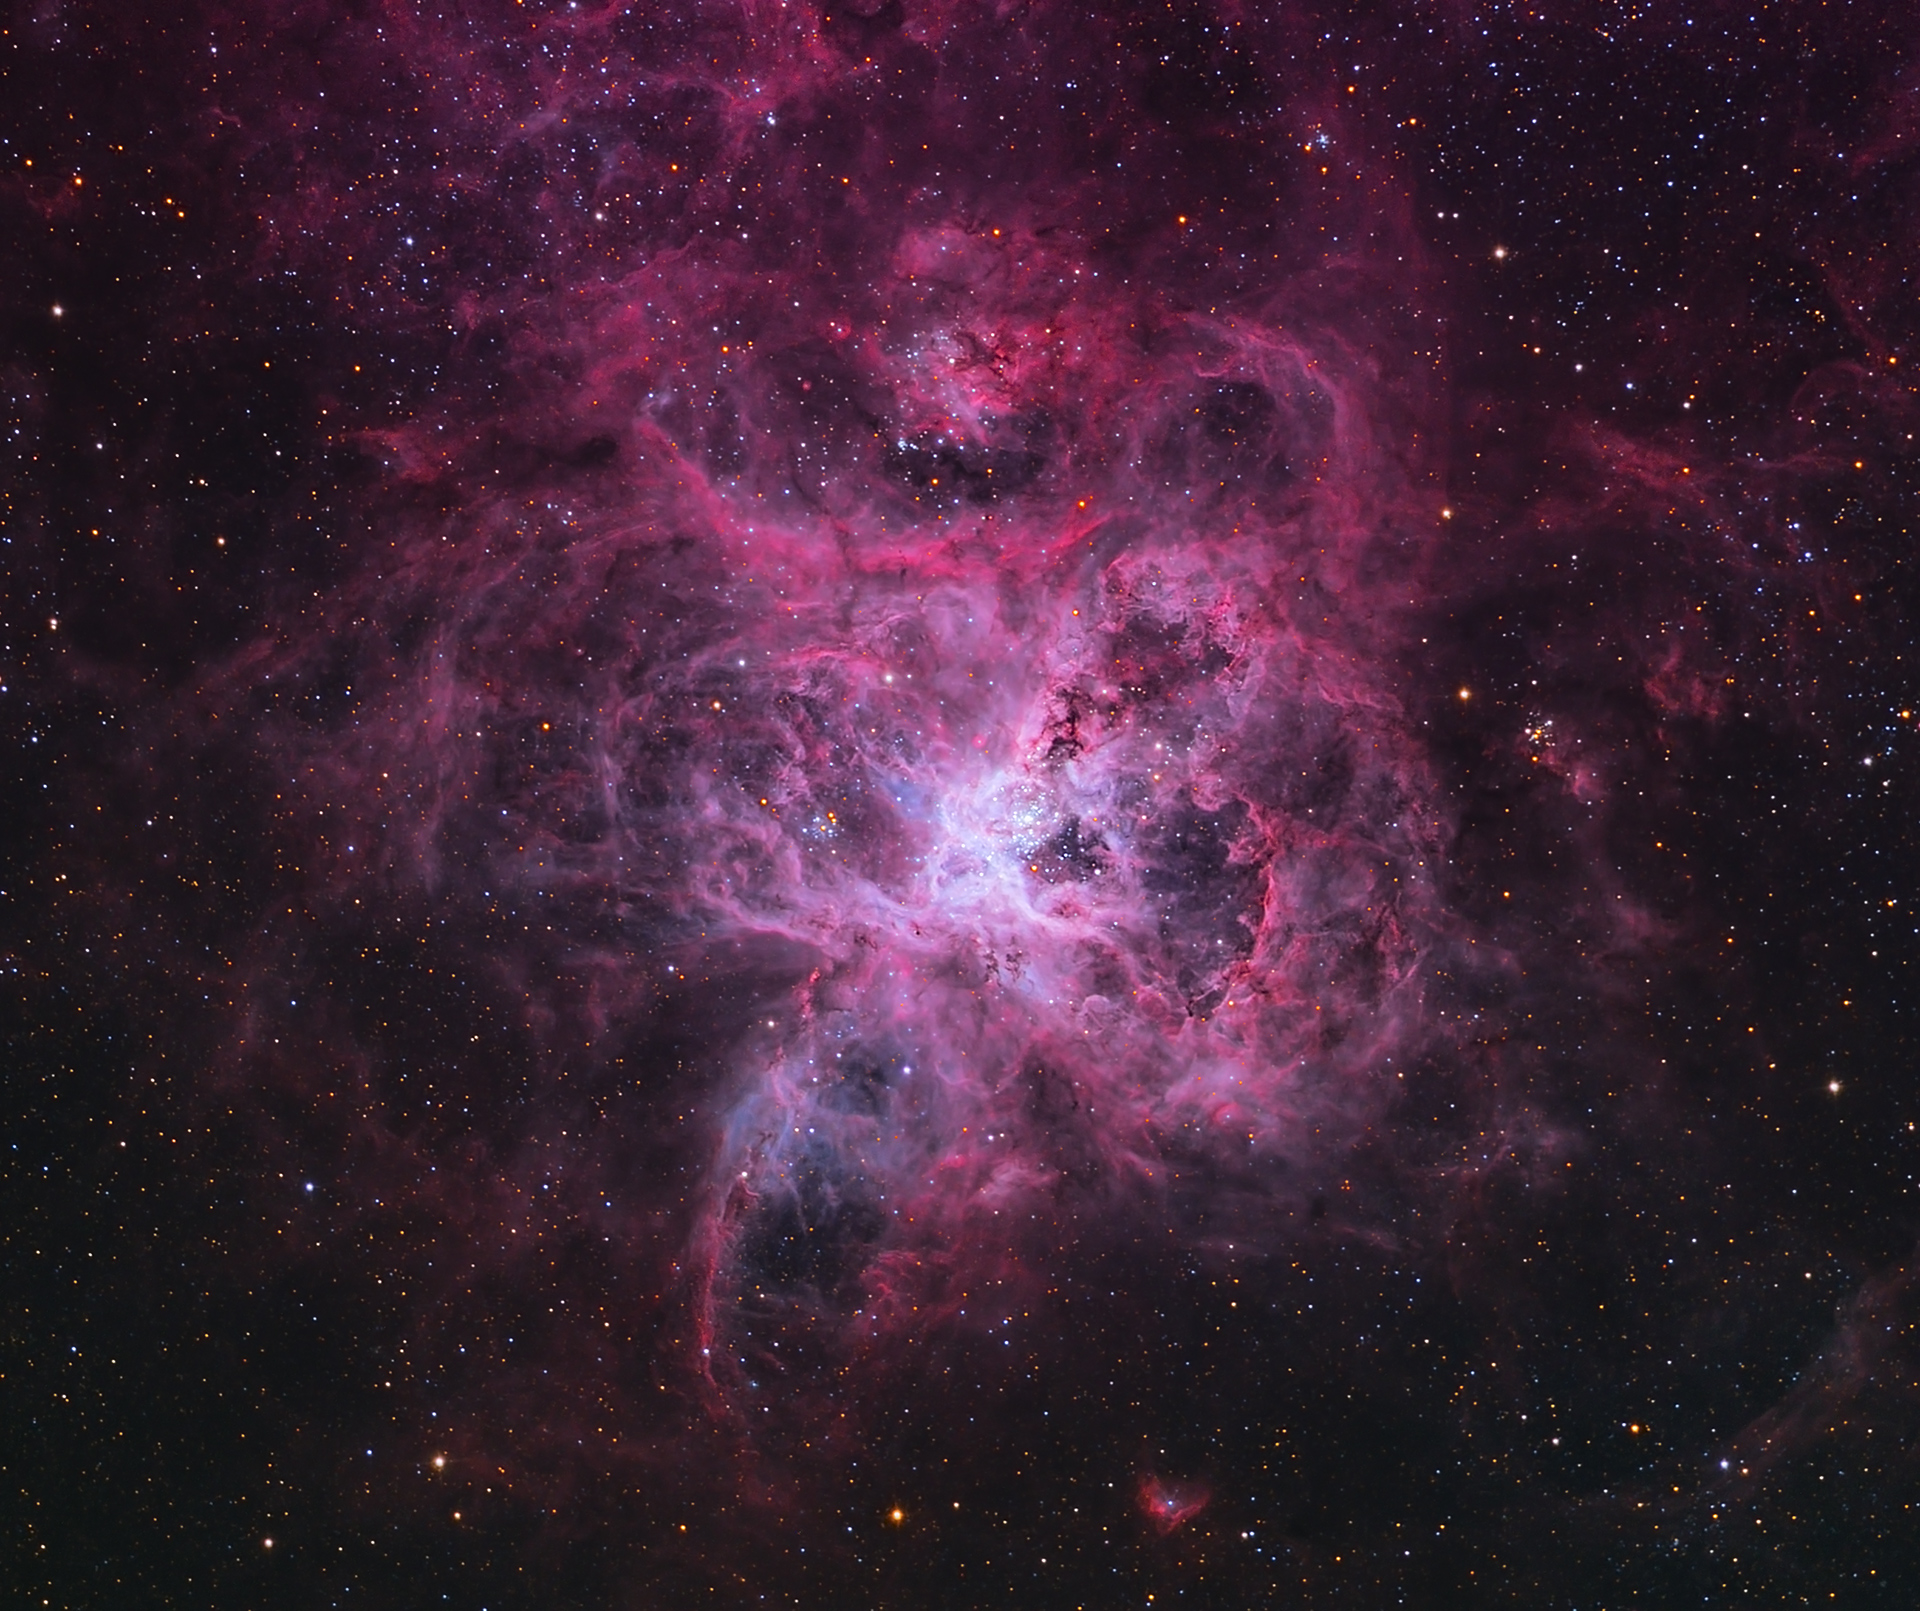 綺麗な銀河 星雲 121 大マゼラン雲のhii領域にある輝線星雲 Emission Nebula タランチュラ星雲 Tarantula Nebula 再改訂 我家のｉｔ化